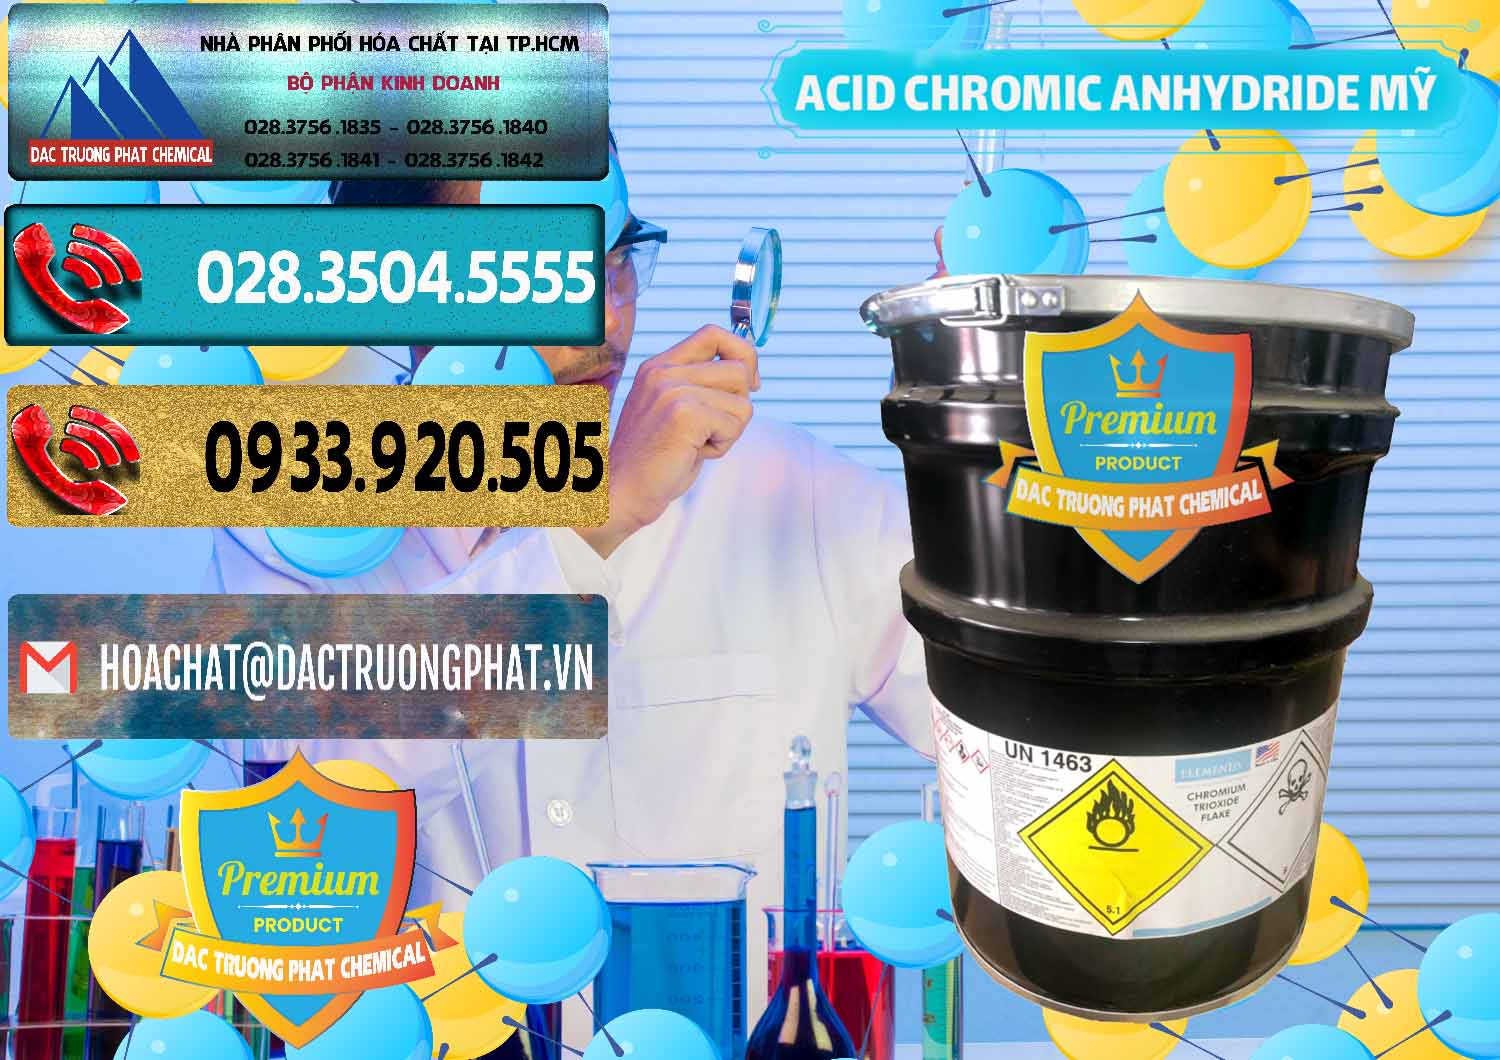 Bán - phân phối Acid Chromic Anhydride - Cromic CRO3 USA Mỹ - 0364 - Nhà cung ứng - phân phối hóa chất tại TP.HCM - hoachatdetnhuom.com